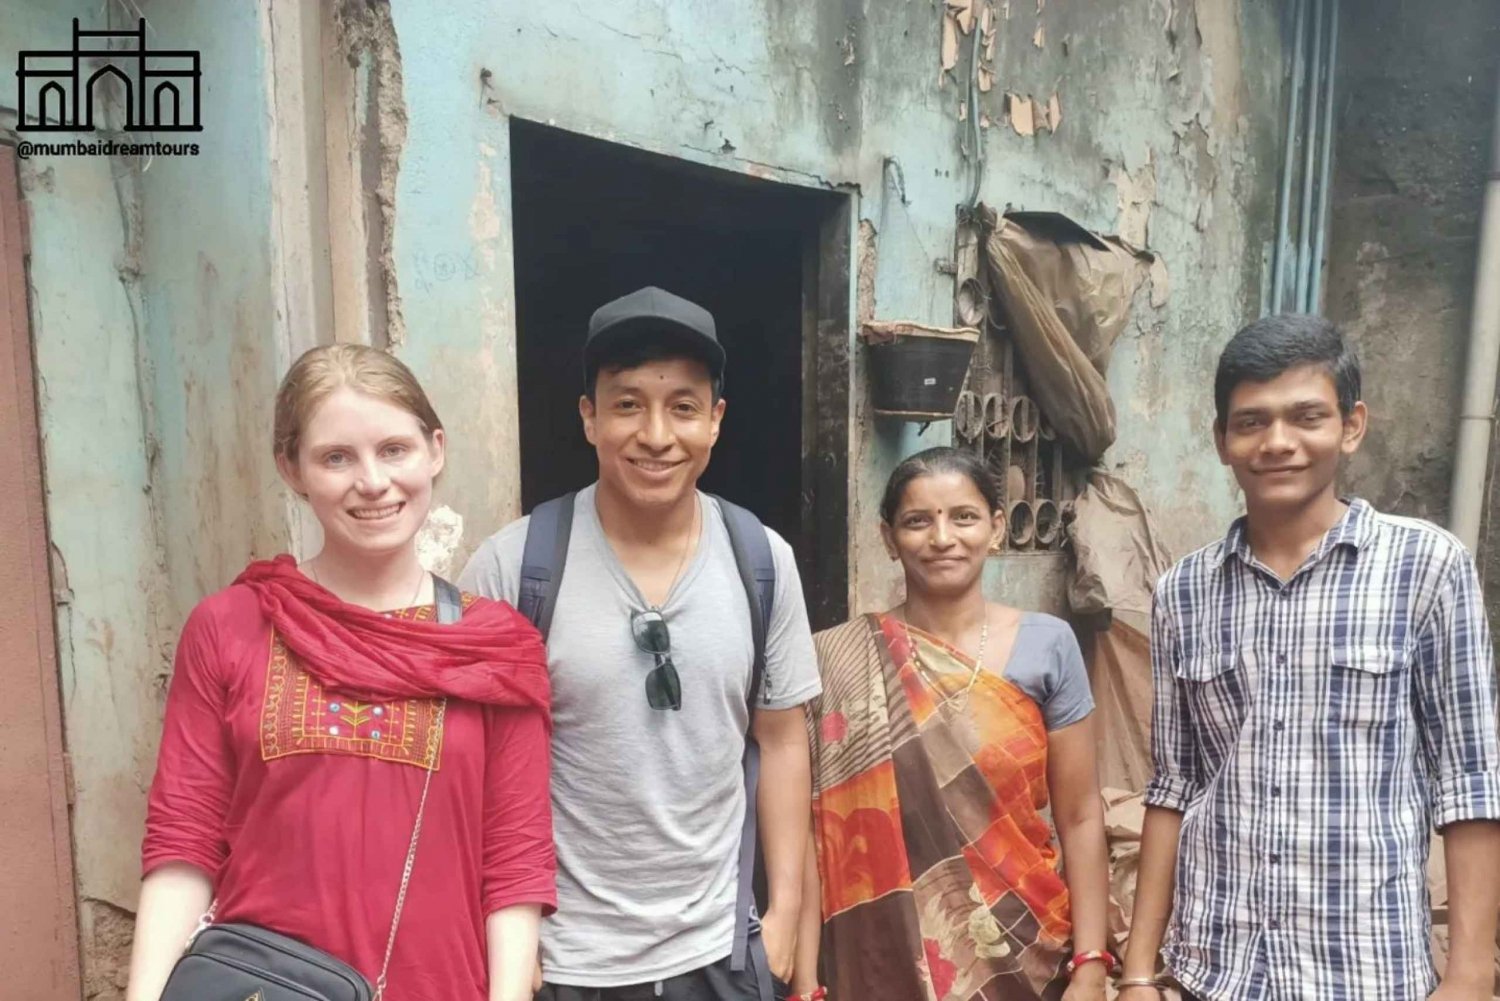 Mumbai : Visite à pied du bidonville de Dharavi avec un habitant du bidonville